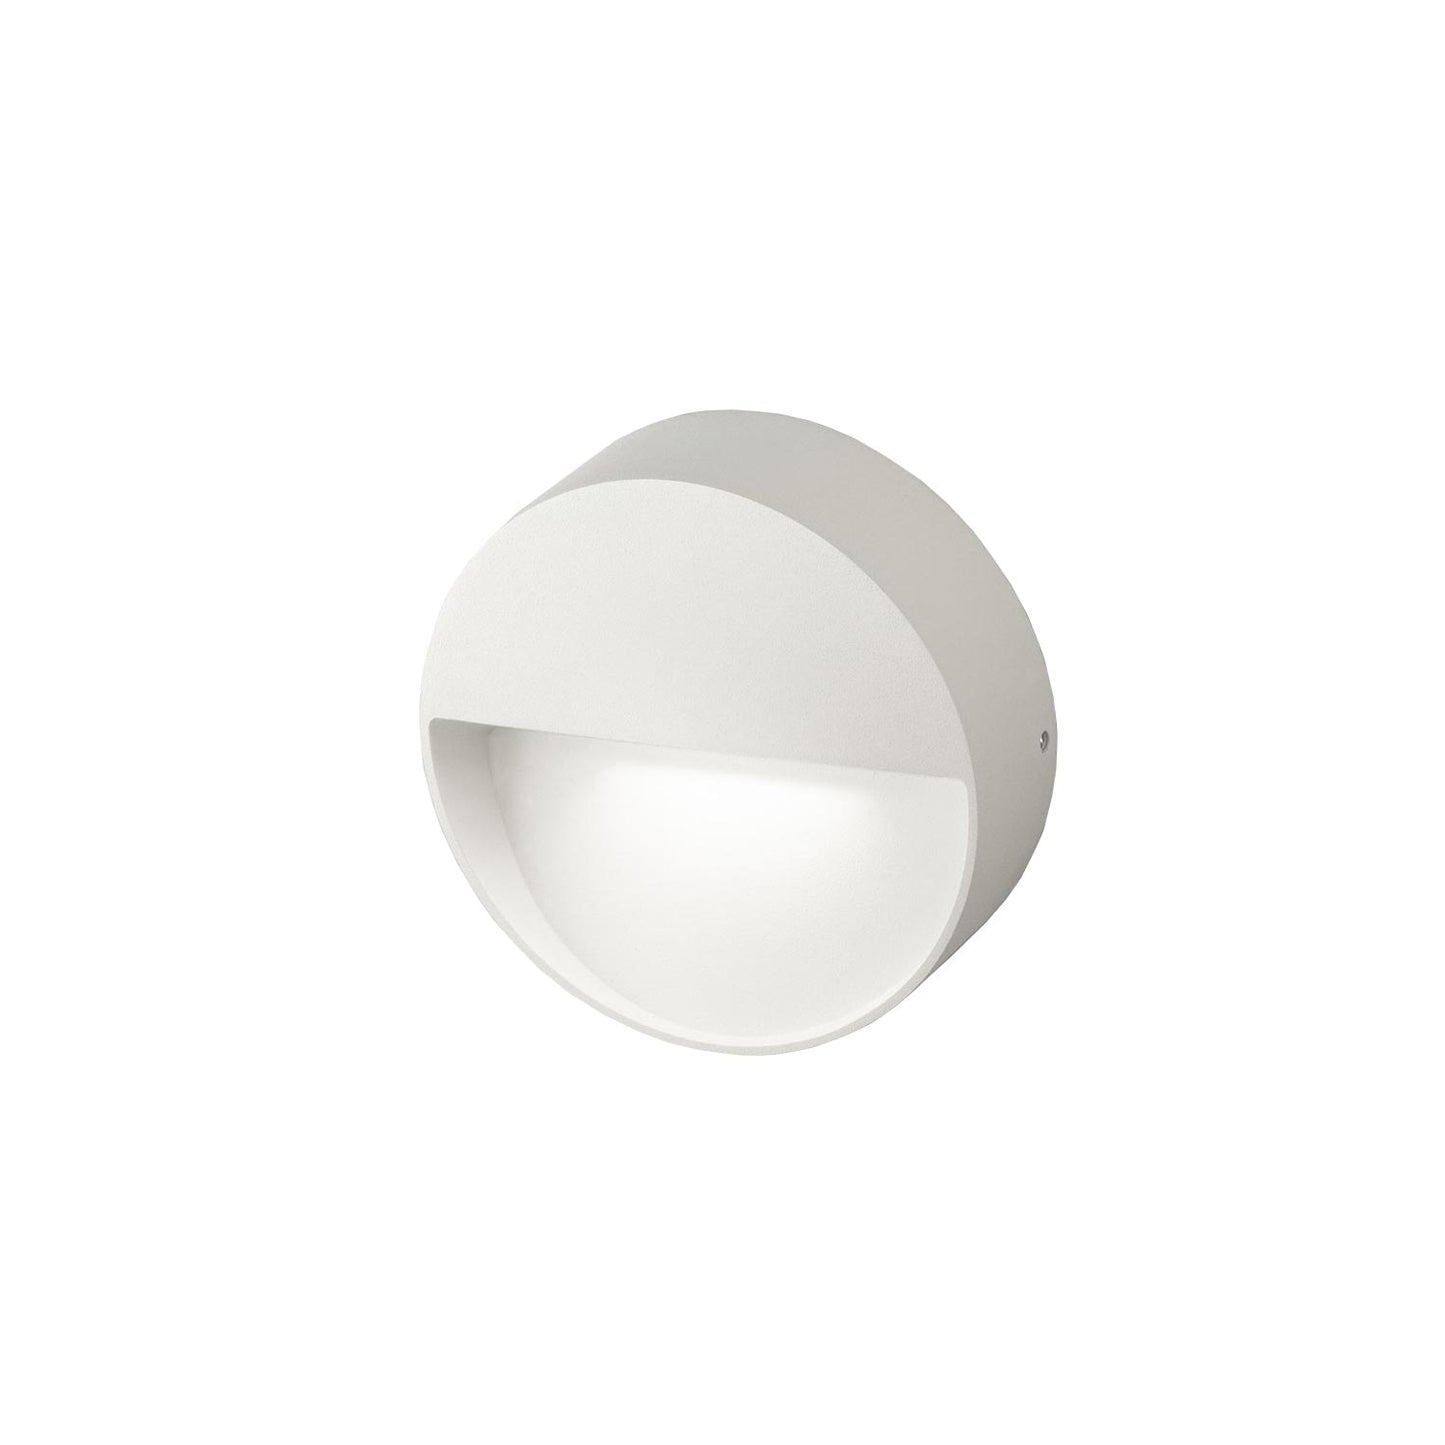 Vigo hvid indbygnings væglampe fra Eggerlicht